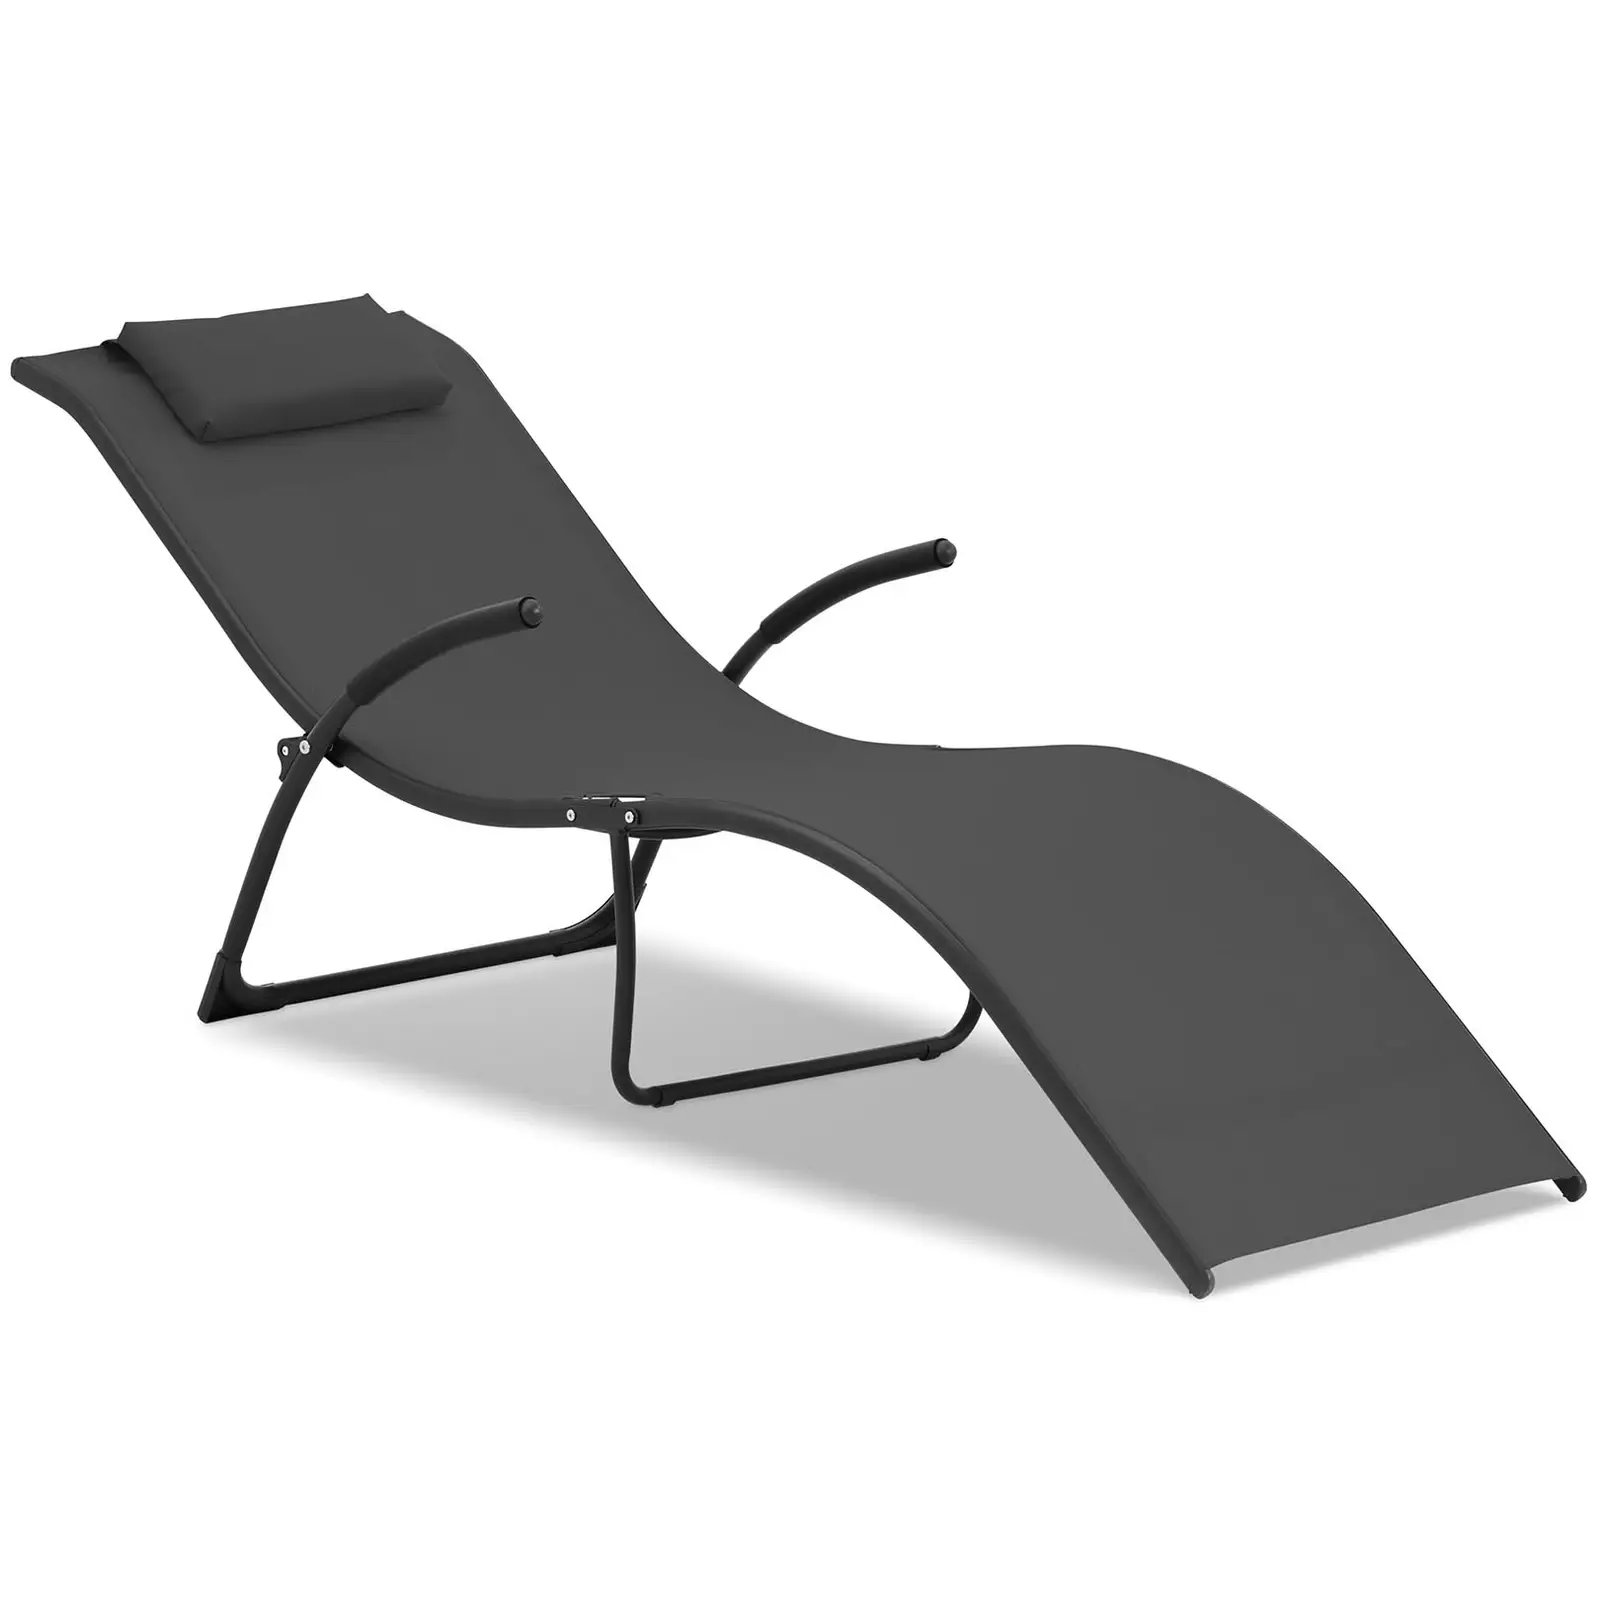 Gartenliege Sonnenliege Liegestuhl Relaxliege Klappbar Schwarz Stahlrahmen 160kg